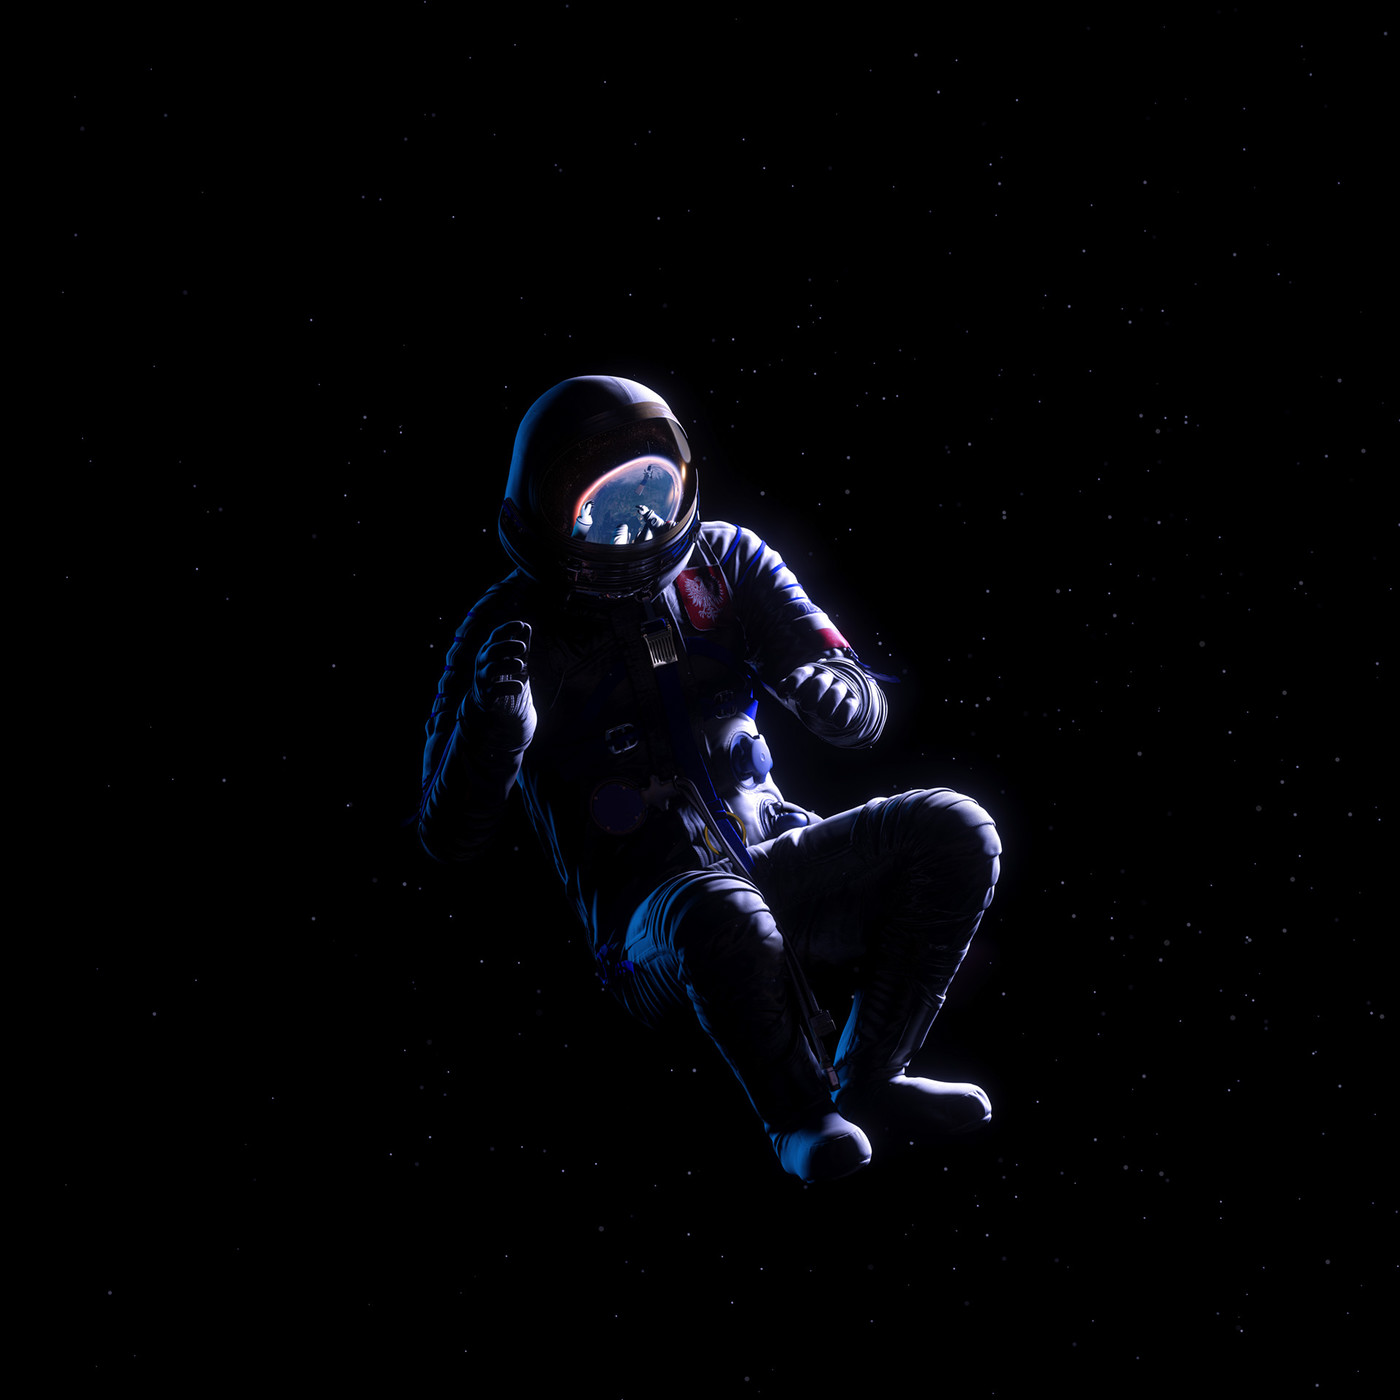 vr Virtual reality Space  cosmos Experience CGI vfx short film Wirtualna Rzeczywistość minimalistic